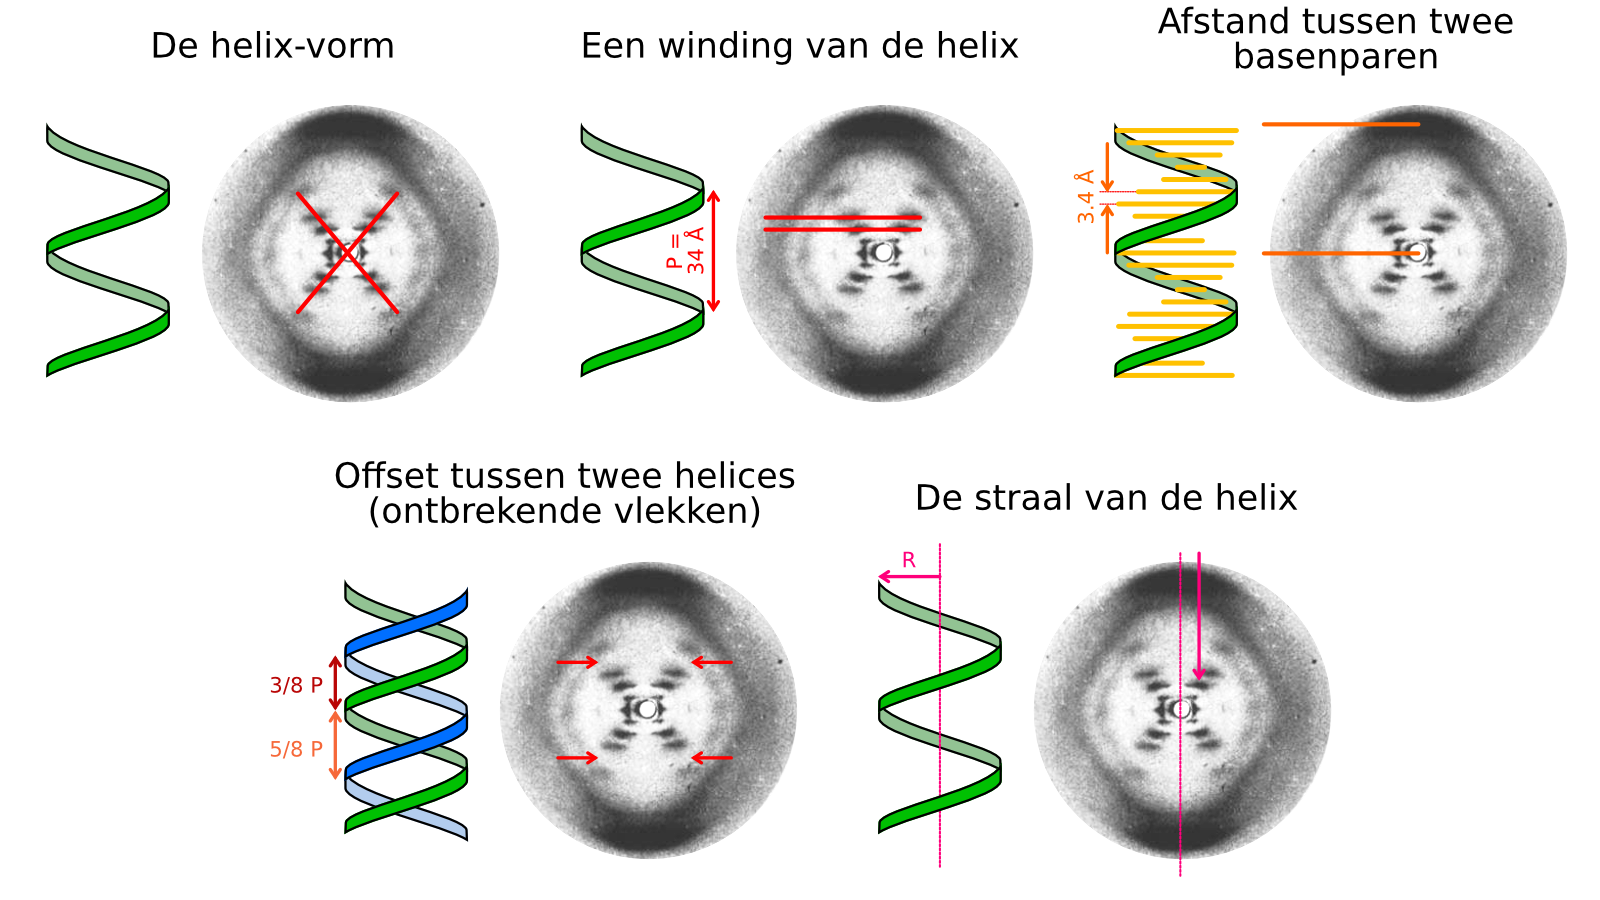 Alle vlekken in Foto 51 komen door de structuur van DNA. De helix veroorzaakt de X in het midden, de pieken het dichtst bij het midden geven aan hoe groot een winding van de helix is, de buitenste pieken geven de afstand tussen basenparen aan, de missende piek komt door de verschuiving tussen de twee helices, en de straal van de helix veroorzaakt de horizontale verschuiving van de pieken. 